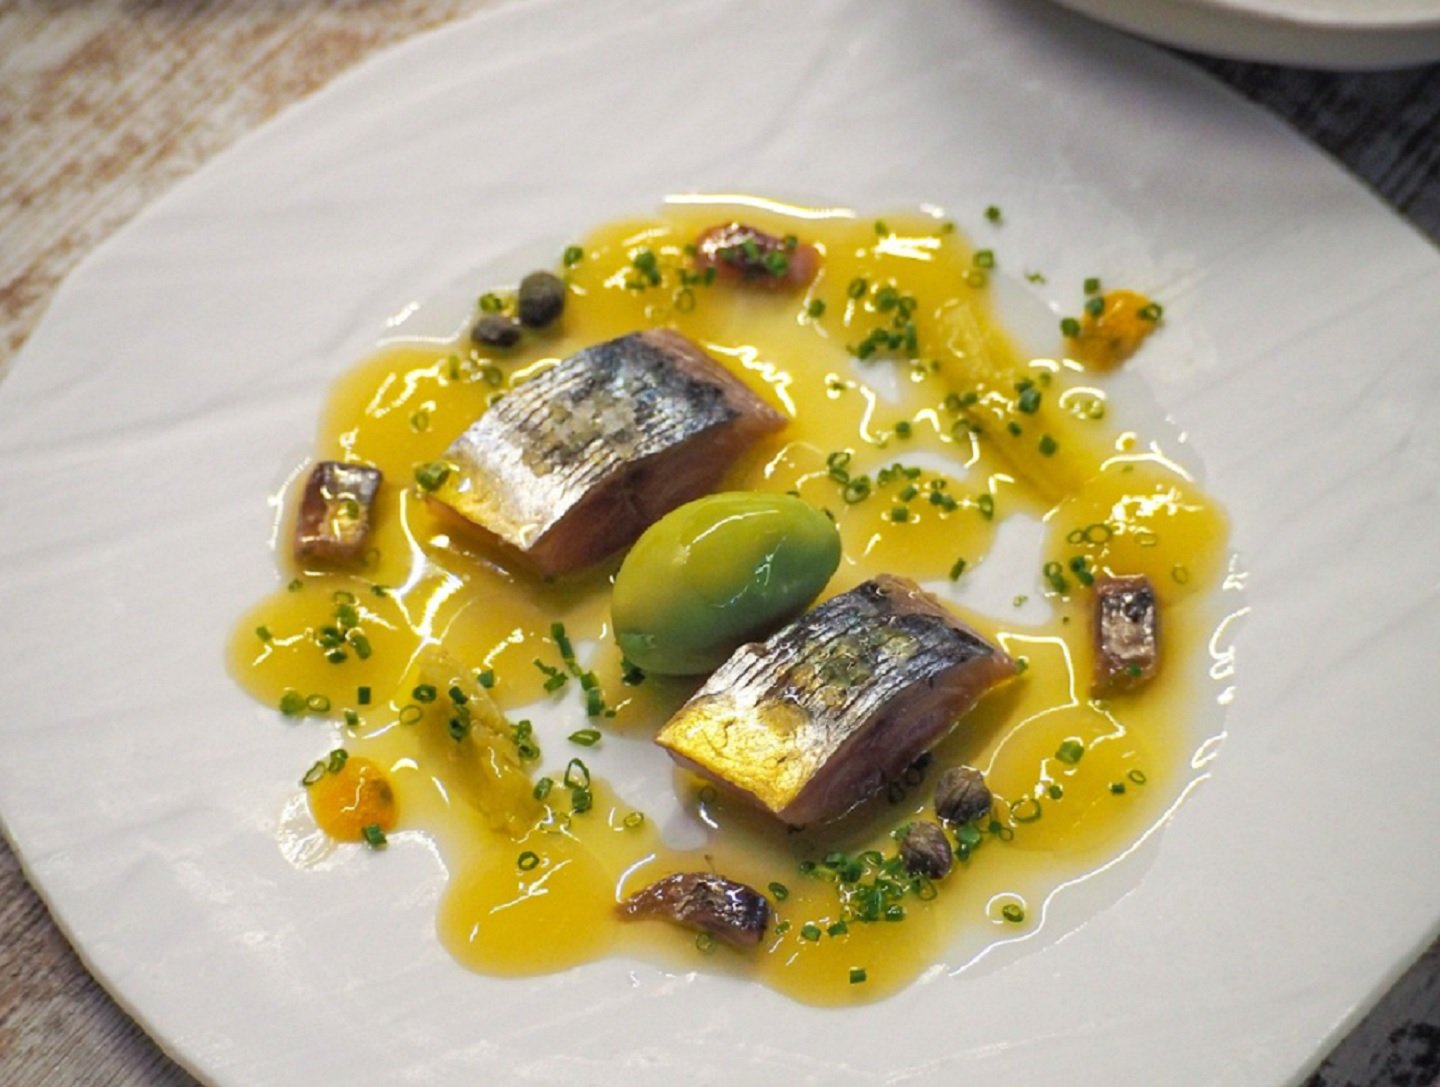 La Gilda del Disfrutar: la receta Estrella Michelin de los chefs del mejor restaurante de Europa